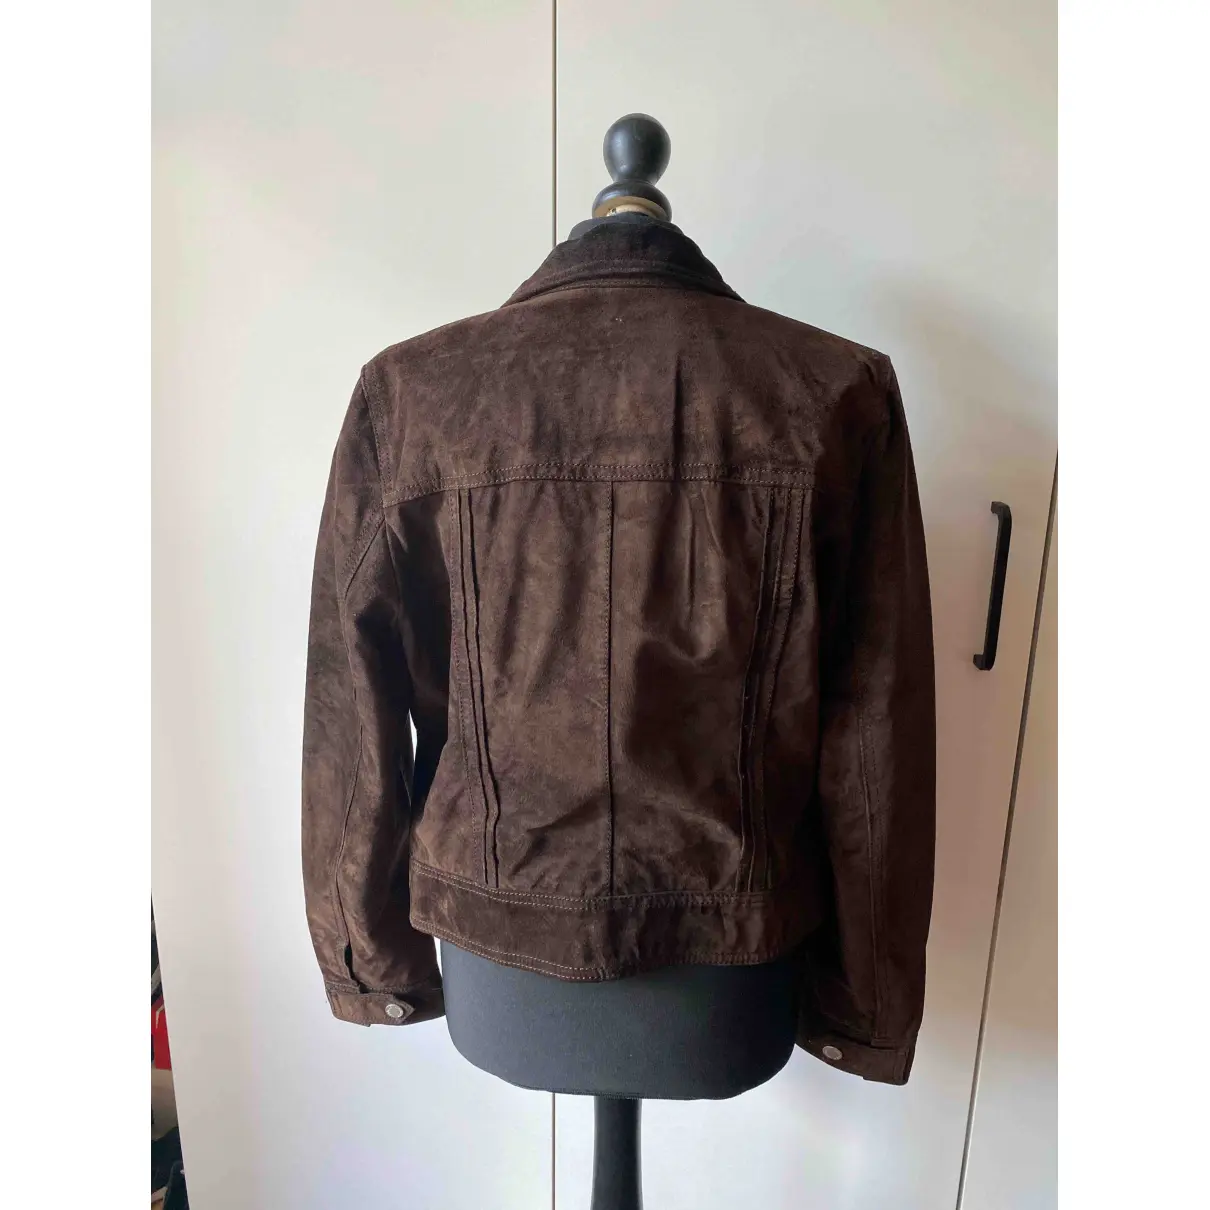 Buy Tommy Hilfiger Leather jacket online